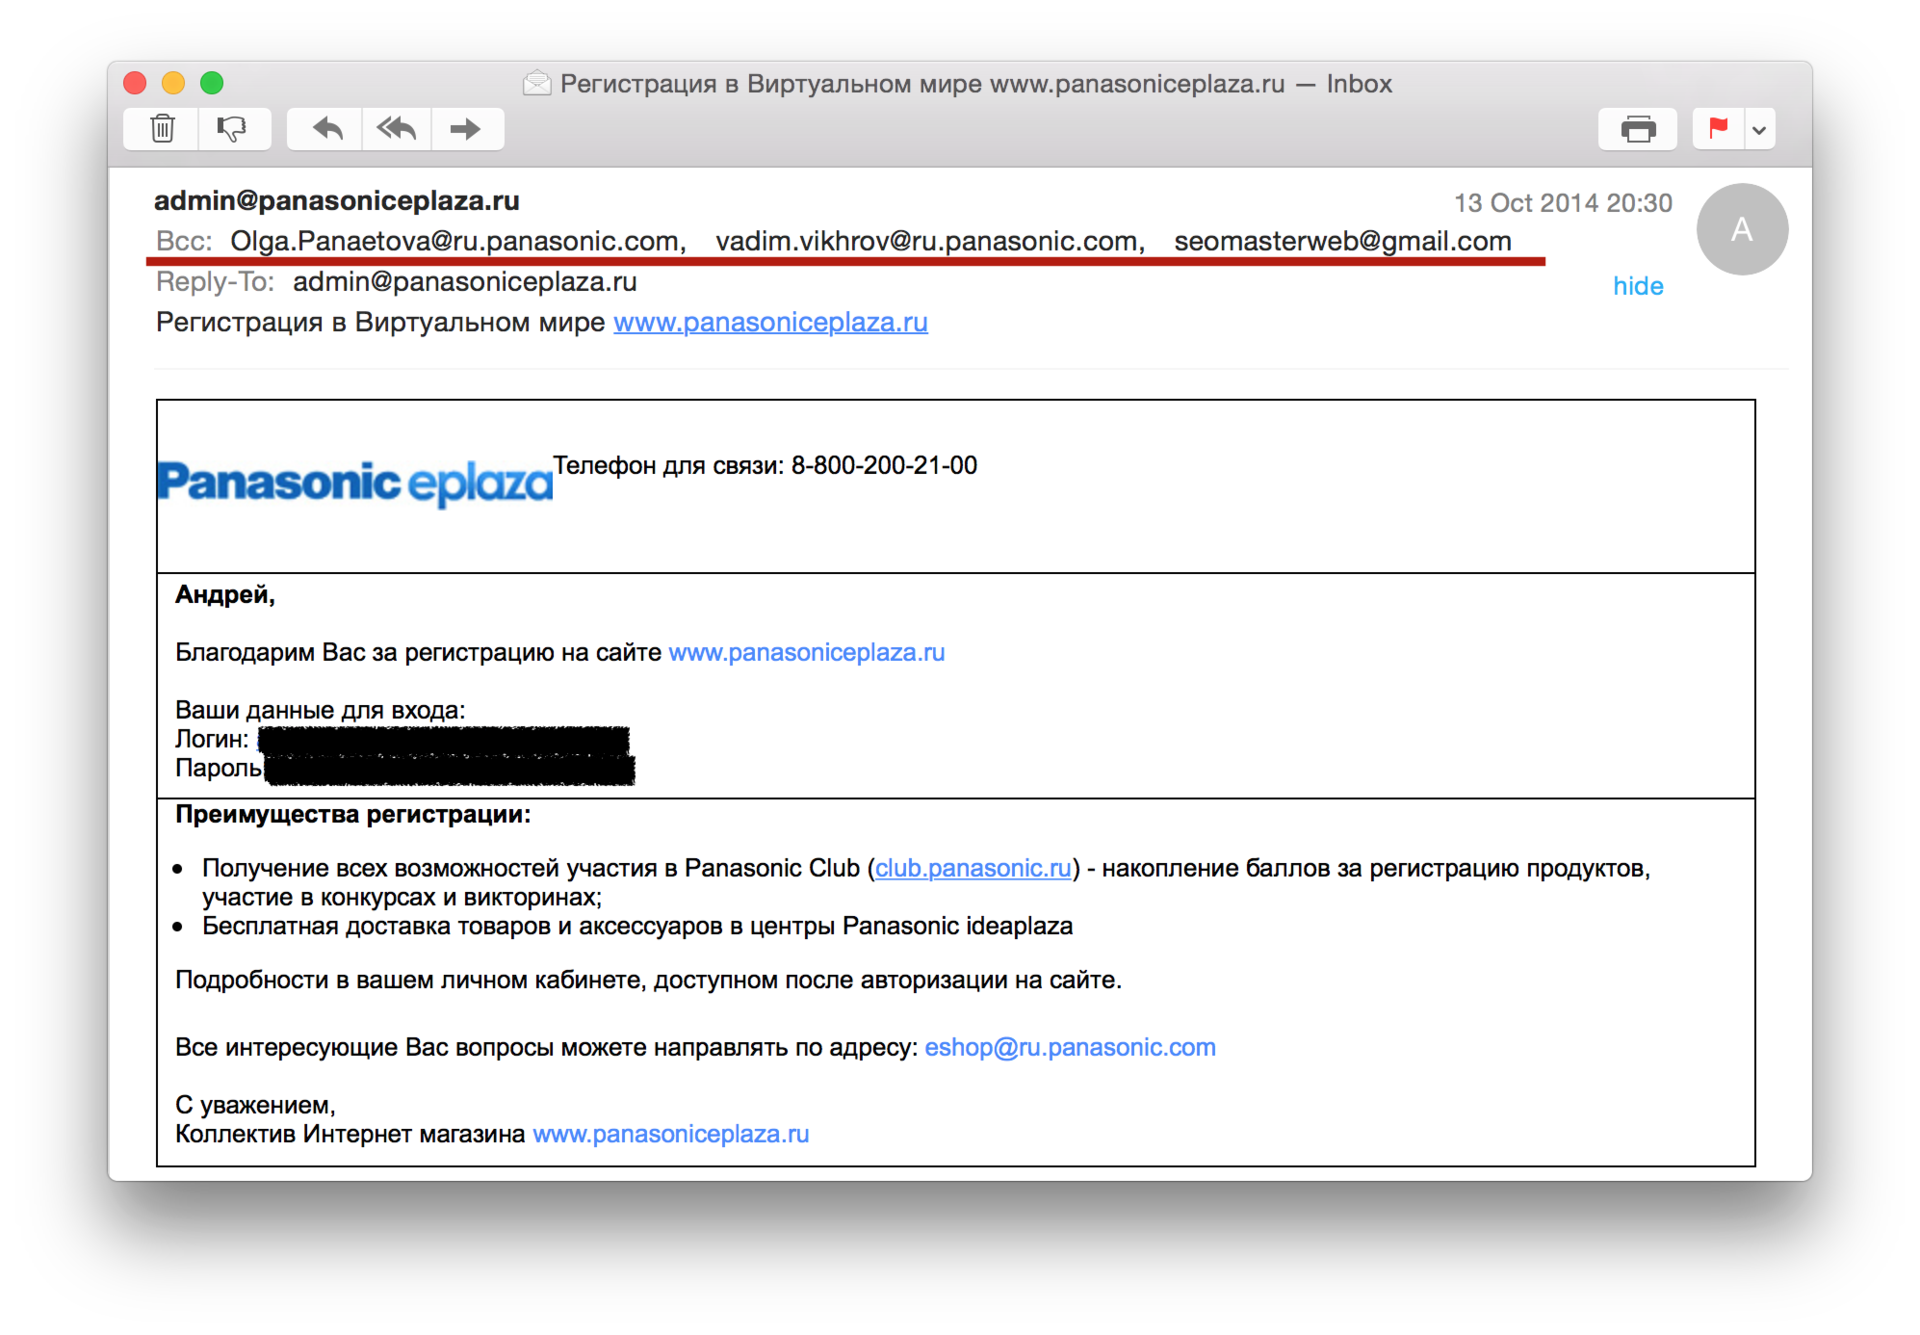 Официальный интернет магазин Panasonic пересылает пароль в открытом виде и в копию 3 адресатам